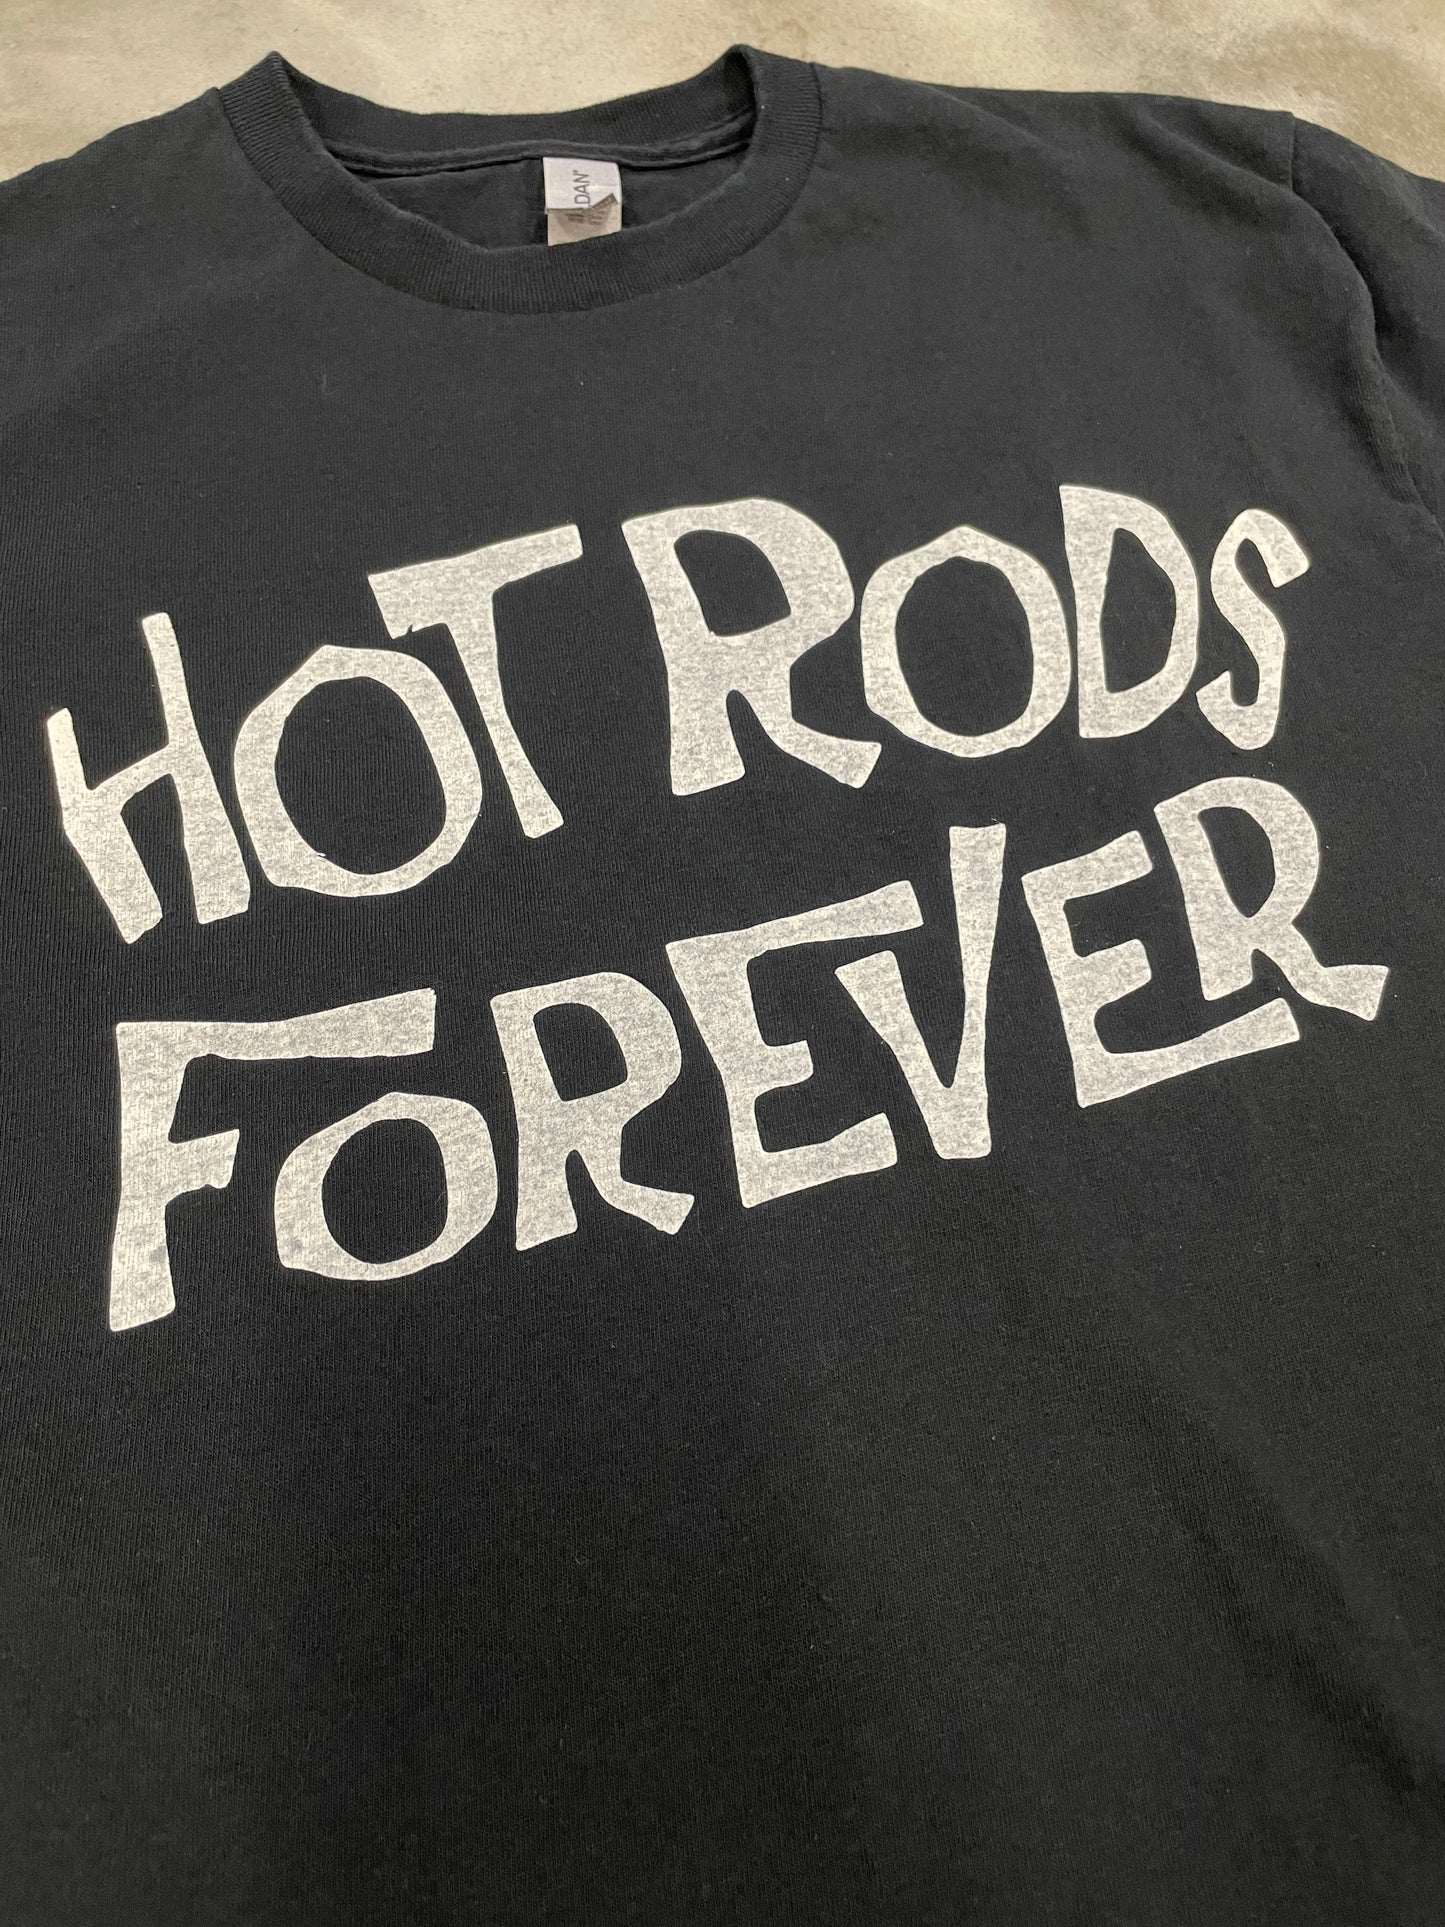 Hot Rods Forever Shirt - Black